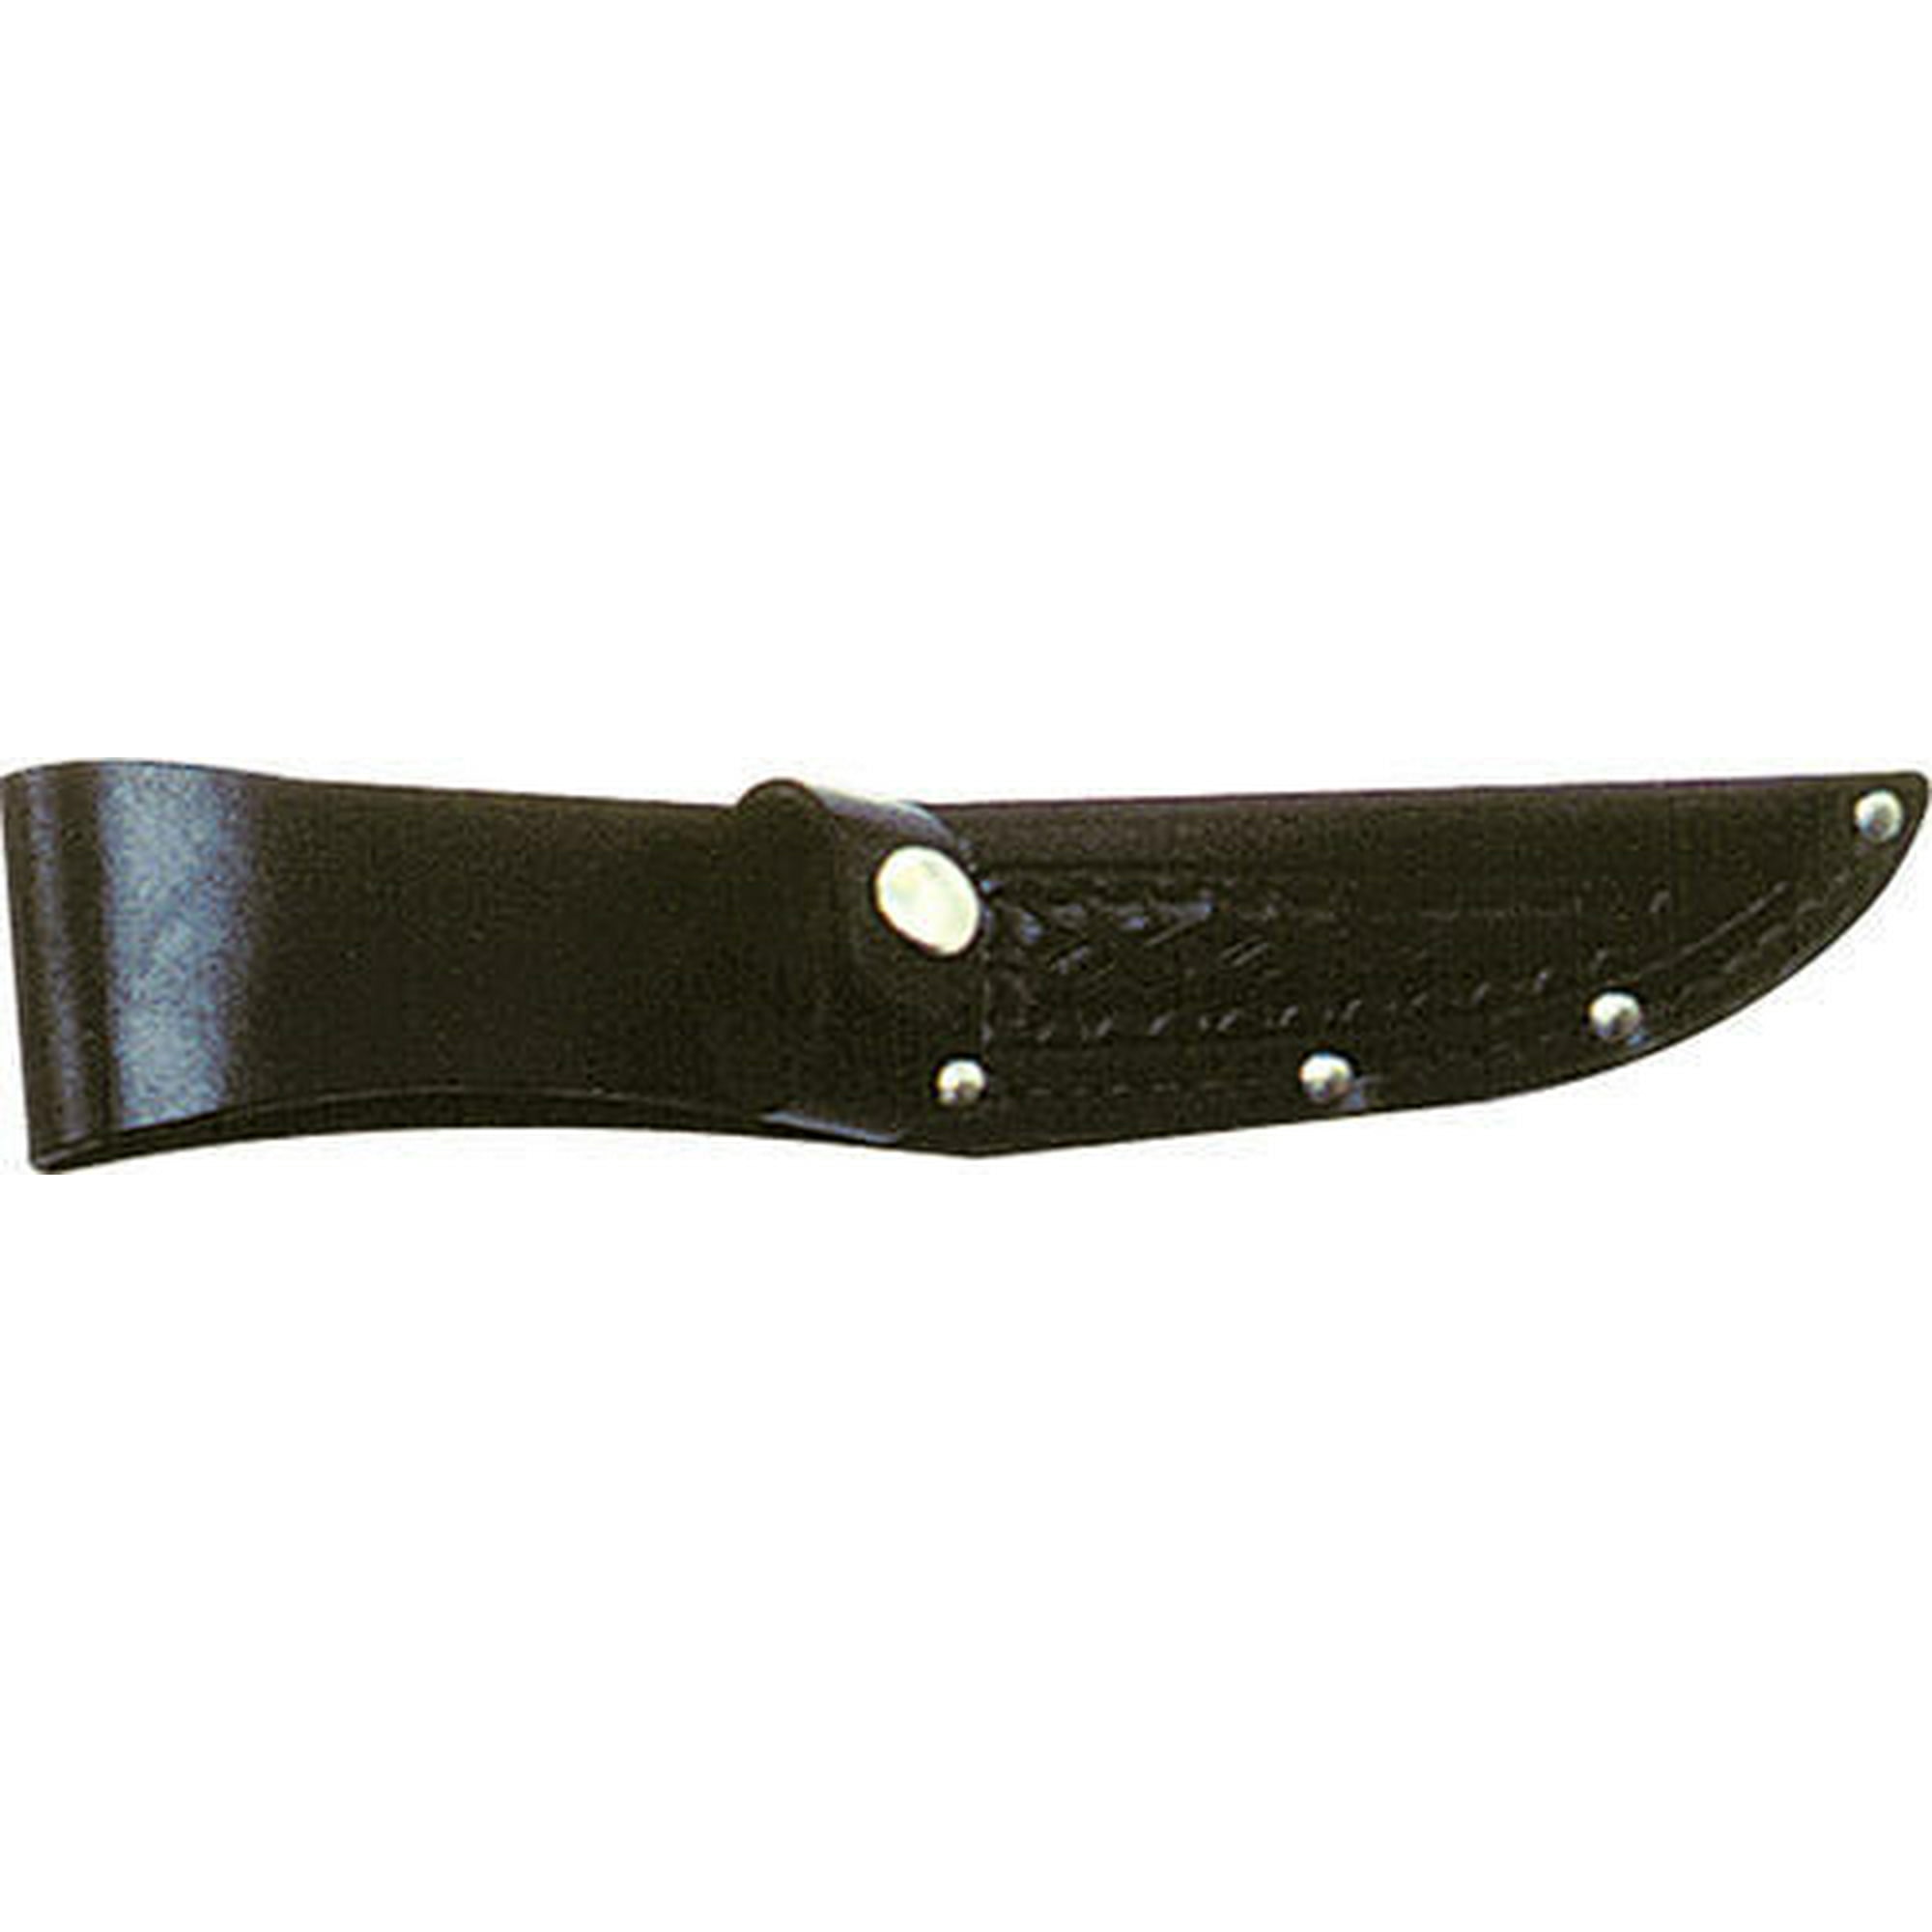 Straight Knife Sheath 4 inch 